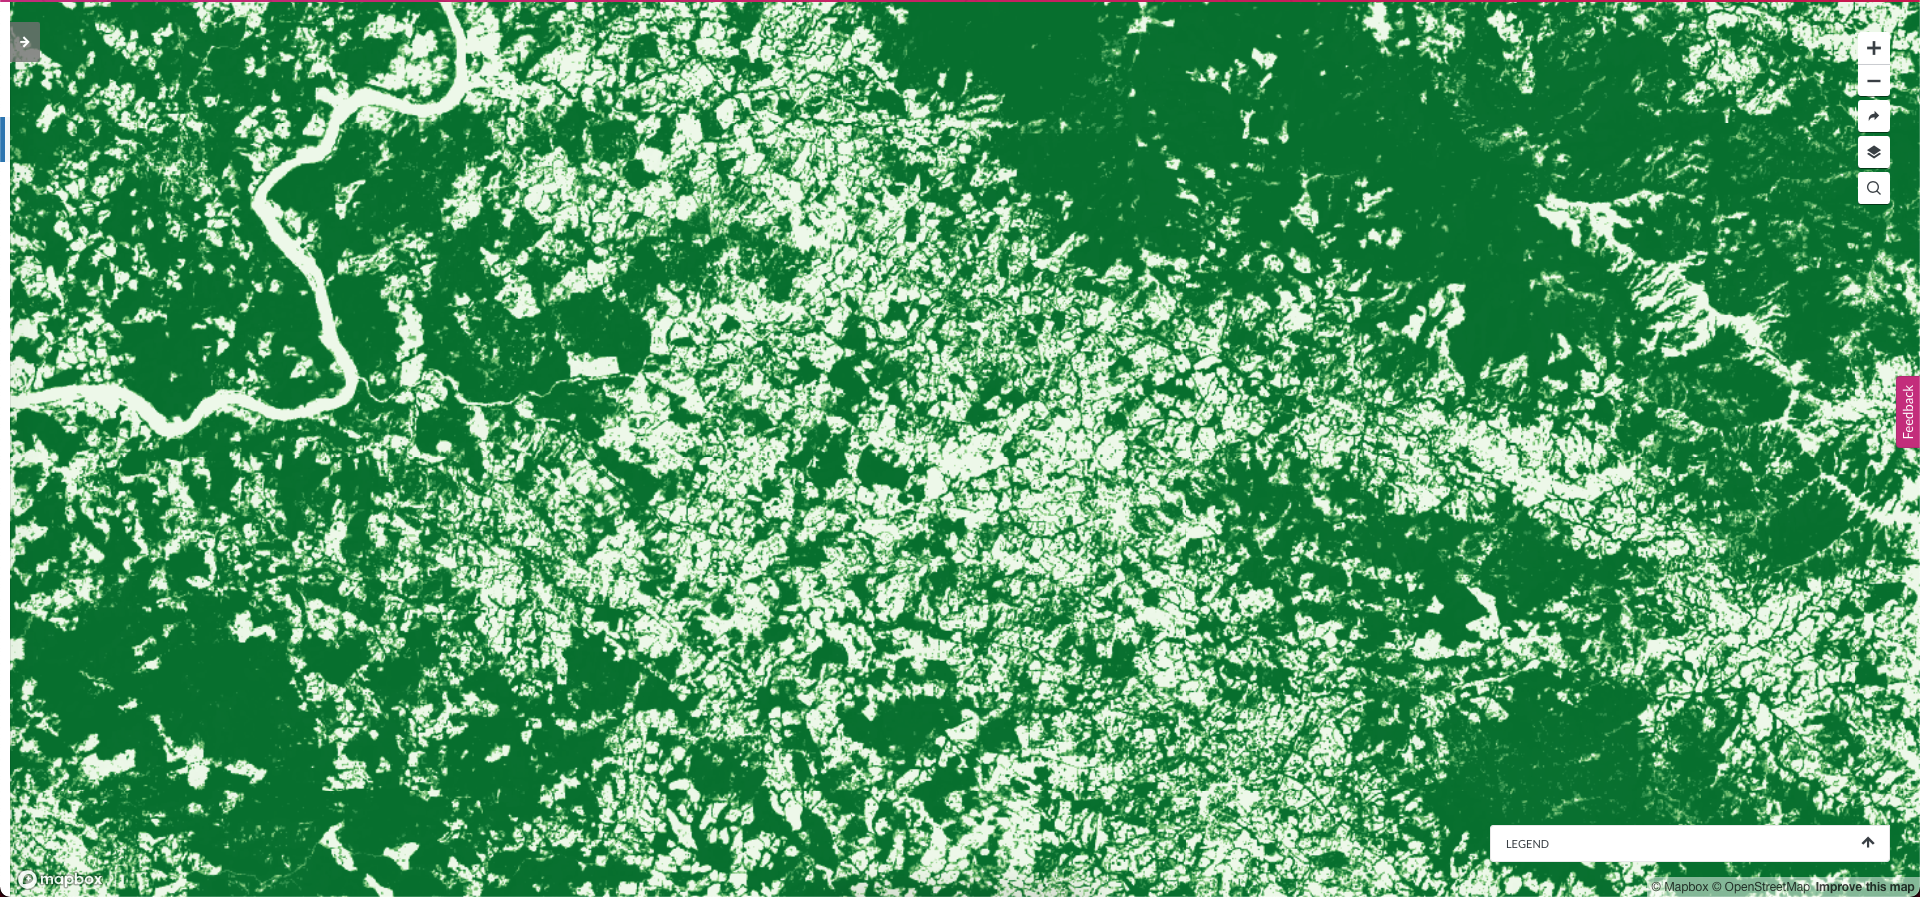 <p>gráficos mostra árvores em paisagens-mosaico no méxico</p>“></p>



<p>Árvores em paisagens-mosaico (à direita) detectam árvores nas florestas secas do México que conjuntos de dados anteriores não conseguiam mostrar (à esquerda) (gráfico: John Brandt/WRI)</p>



<h3 class=